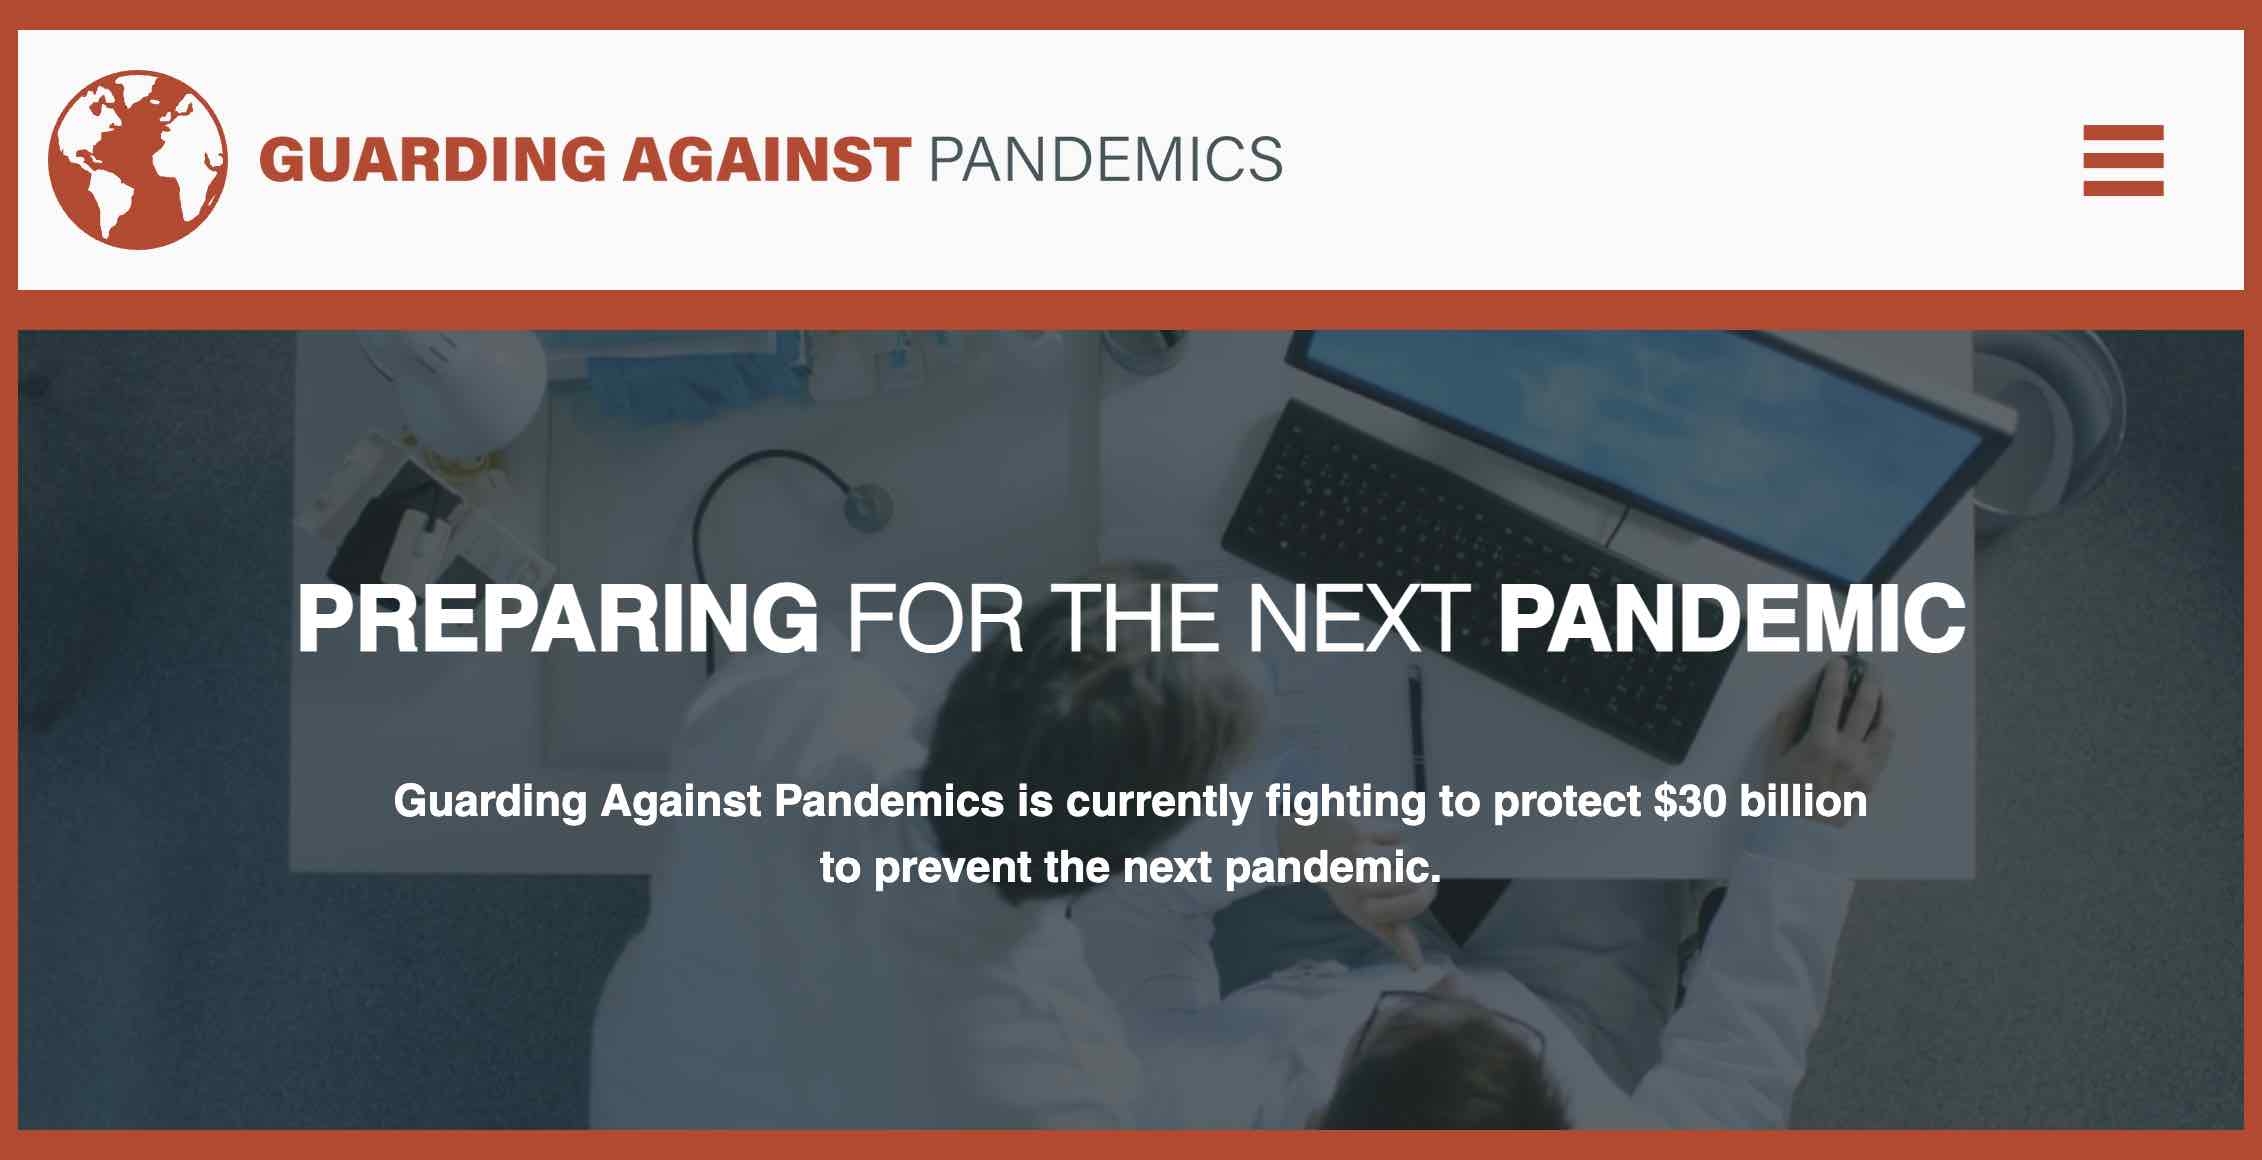 guarding-against-pandemics.jpg